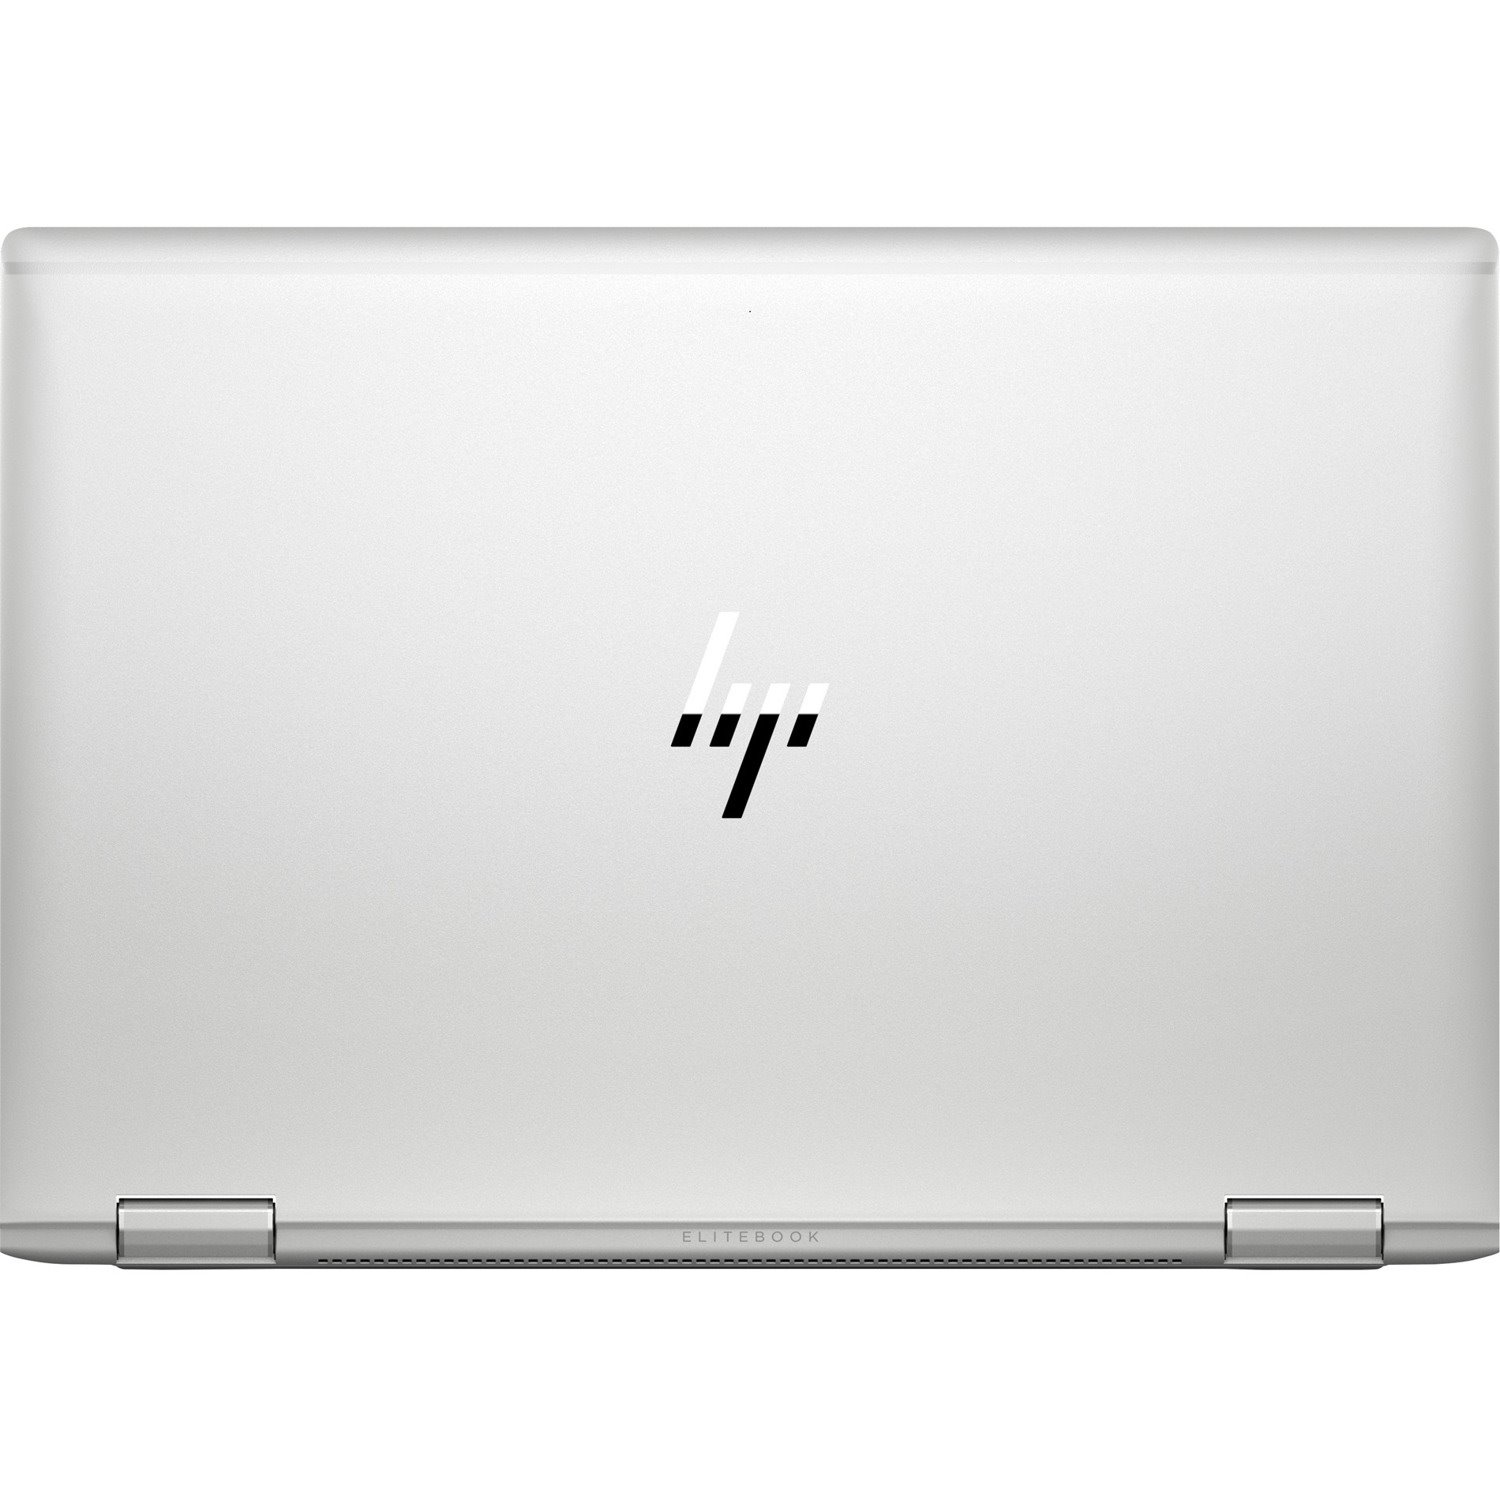 HP EliteBook x360 1040 G6 LTE 14" Touchscreen Convertible 2 in 1 Notebook - Intel Core i7 8th Gen i7-8565U Quad-core (4 Core) 1.80 GHz - 16 GB Total RAM - 512 GB SSD